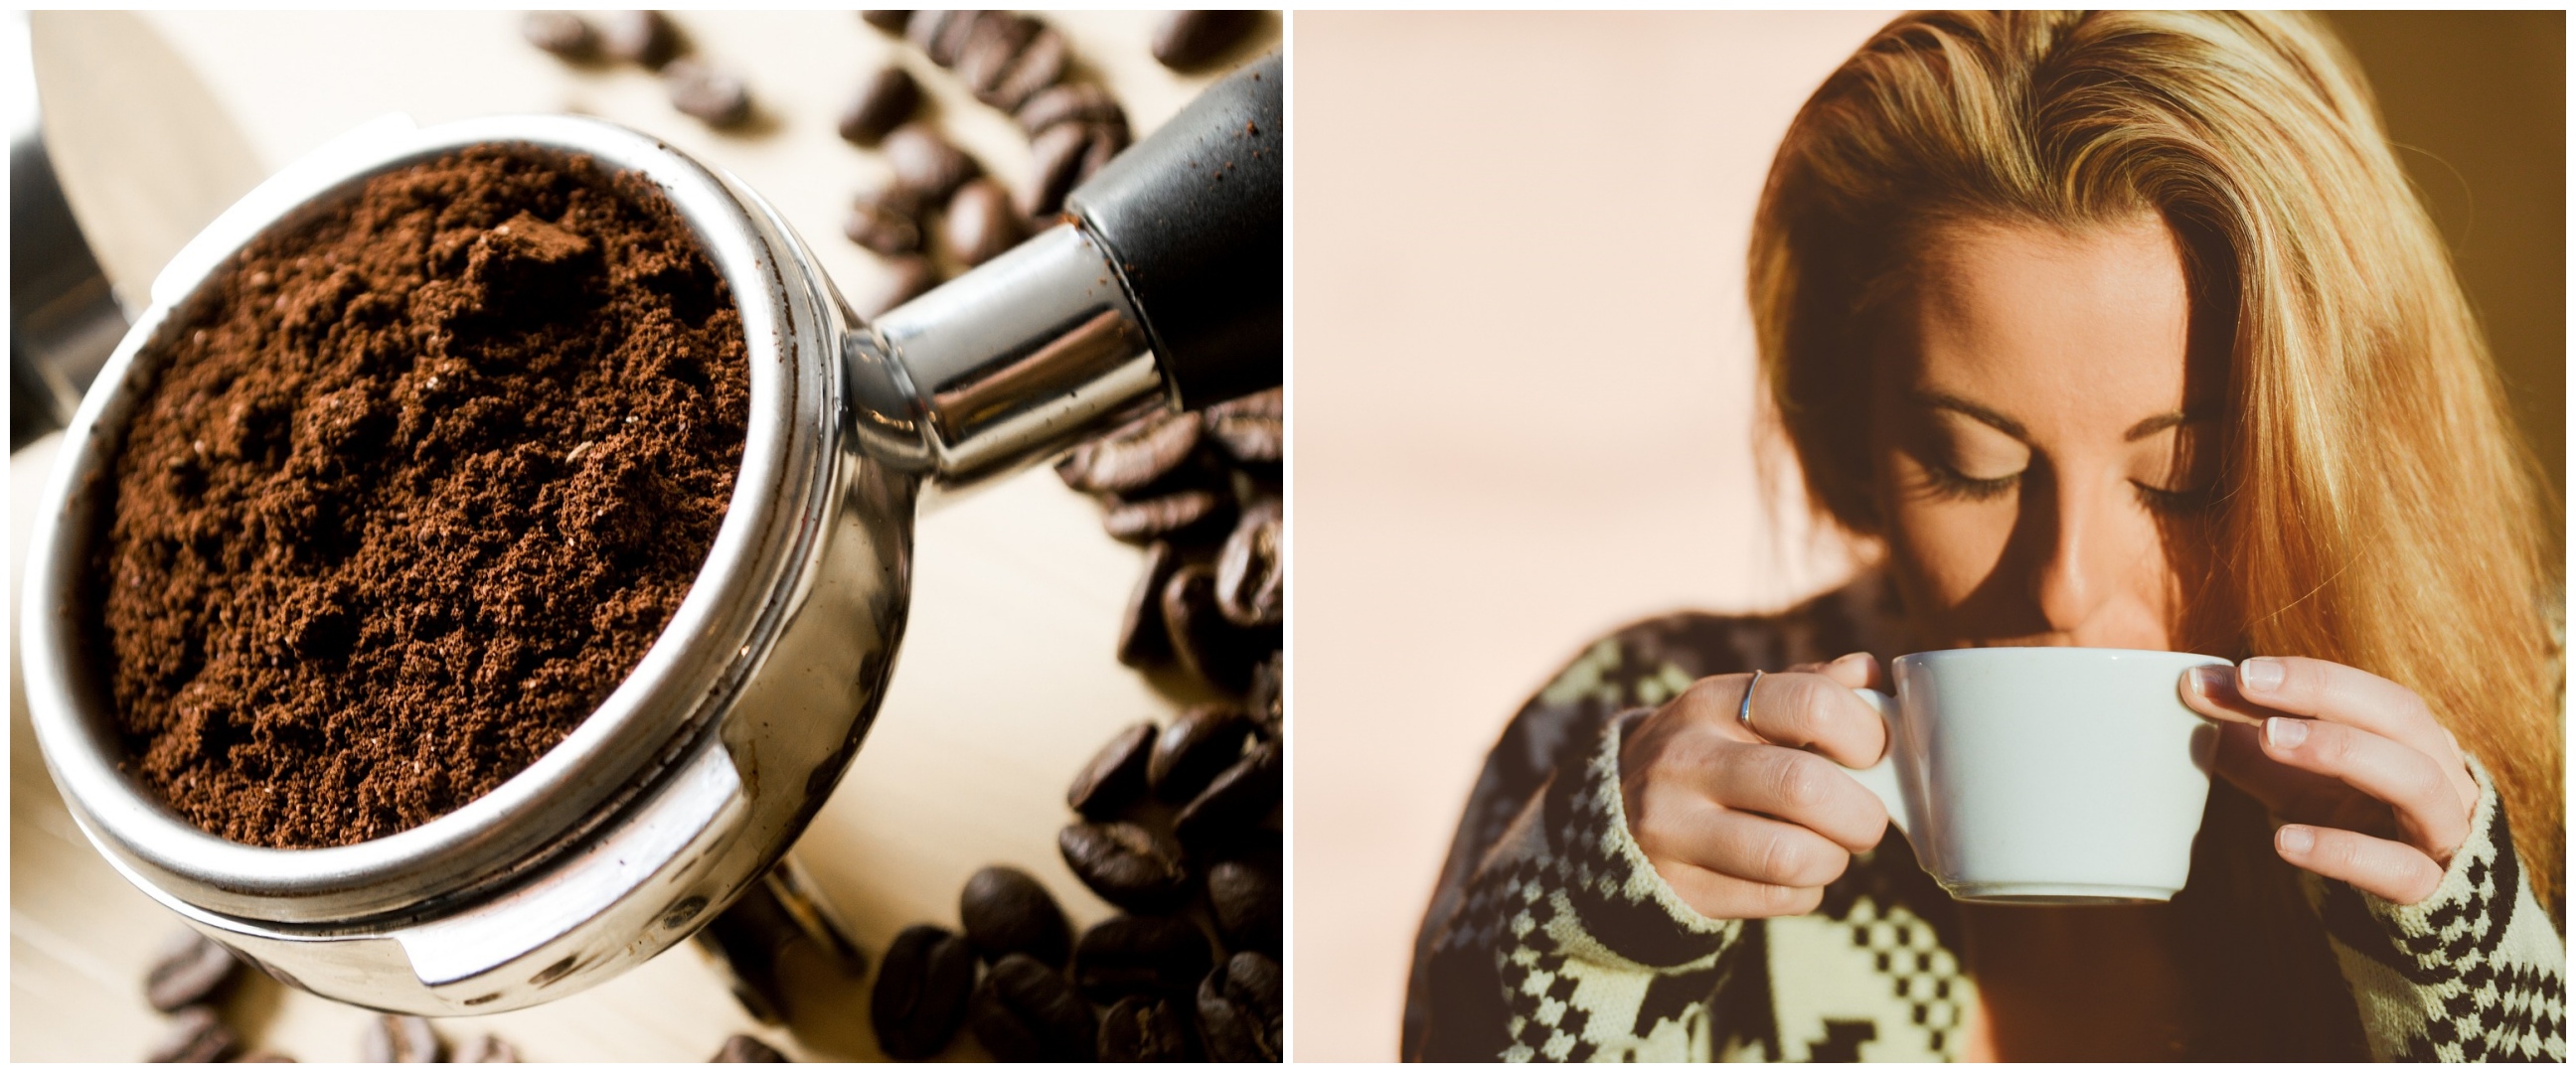 7 Efek samping mengonsumsi kafein berlebihan bagi wanita, bisa timbulkan gangguan reproduksi